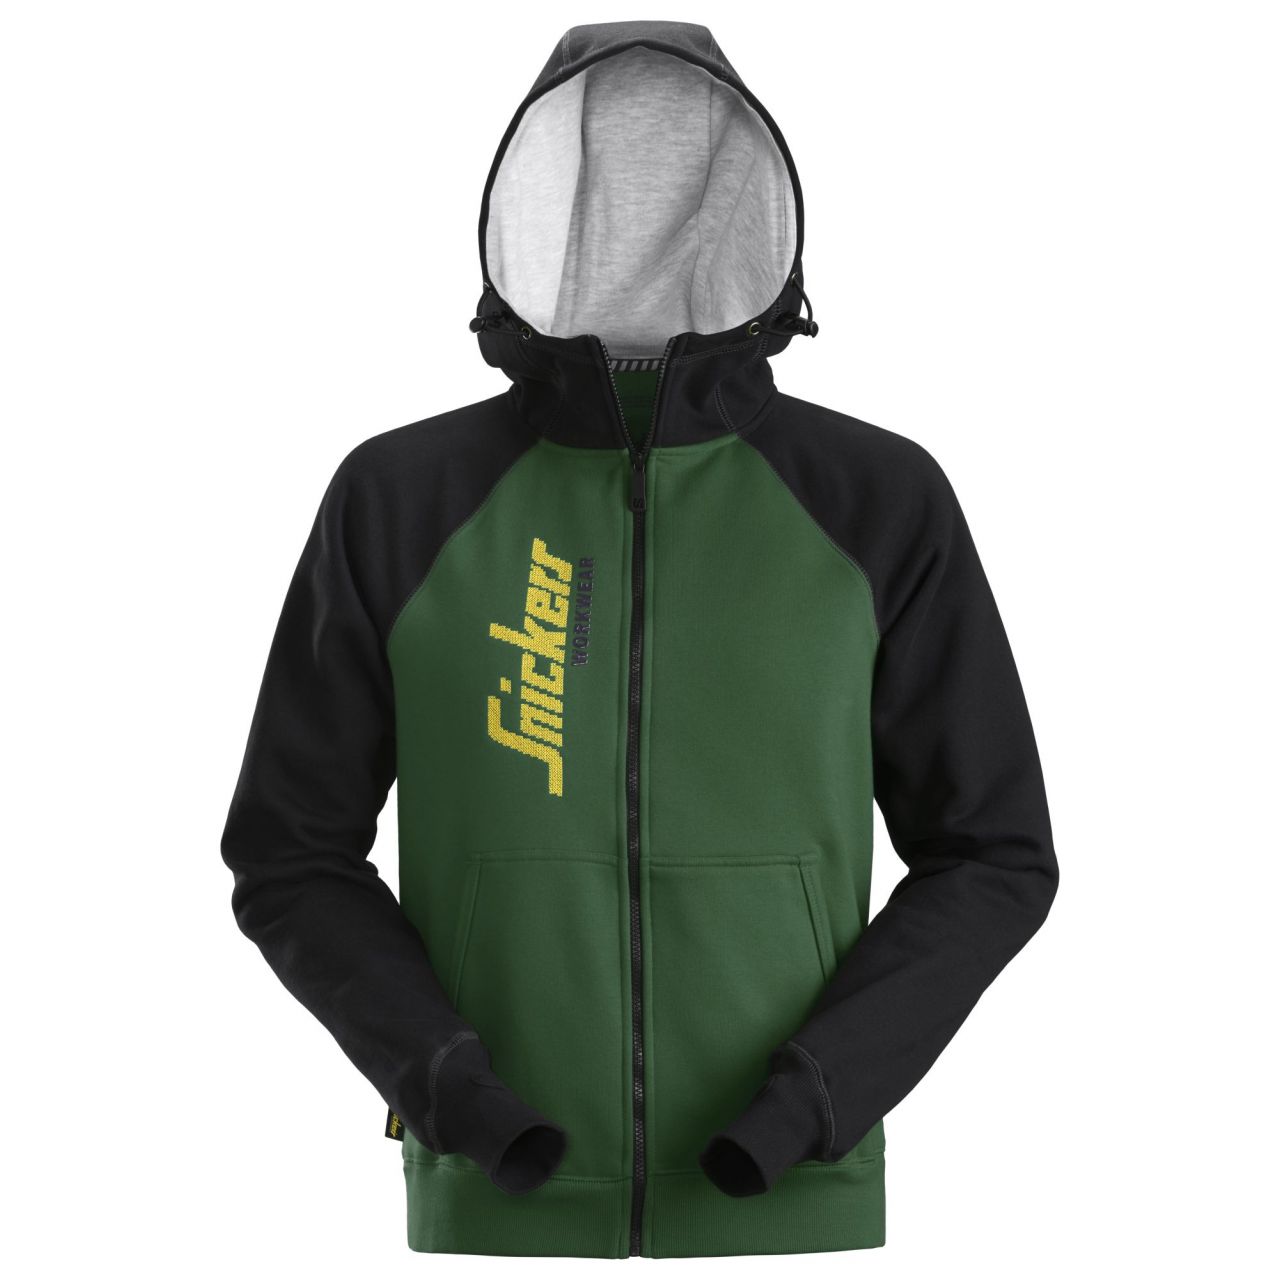 Sudadera con capucha con cremallera completa y logotipo Verde bosque/Negra talla XXXL